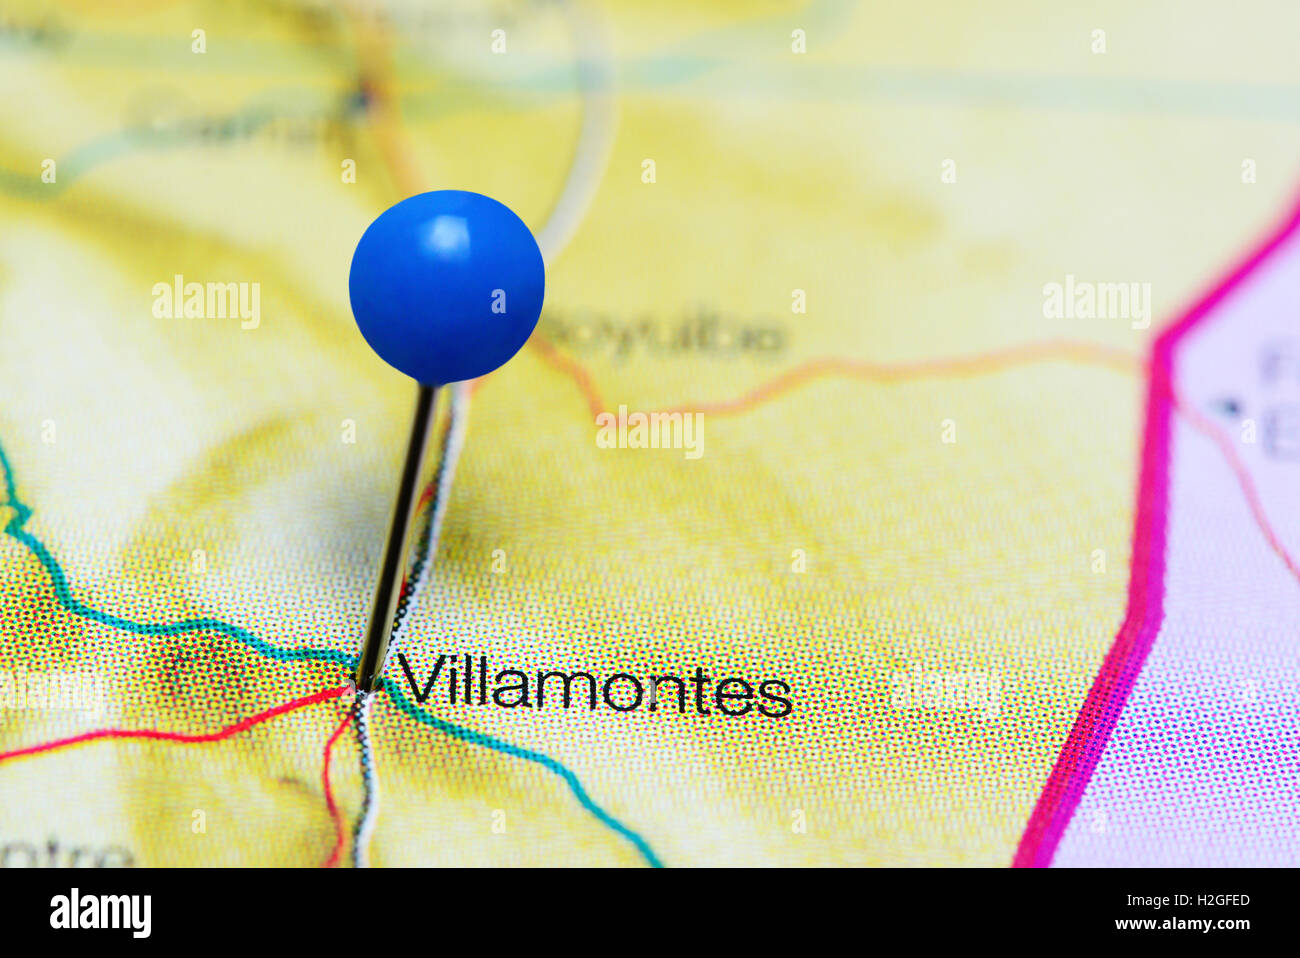 Villamontes coincé sur une carte de la bolivie Banque D'Images